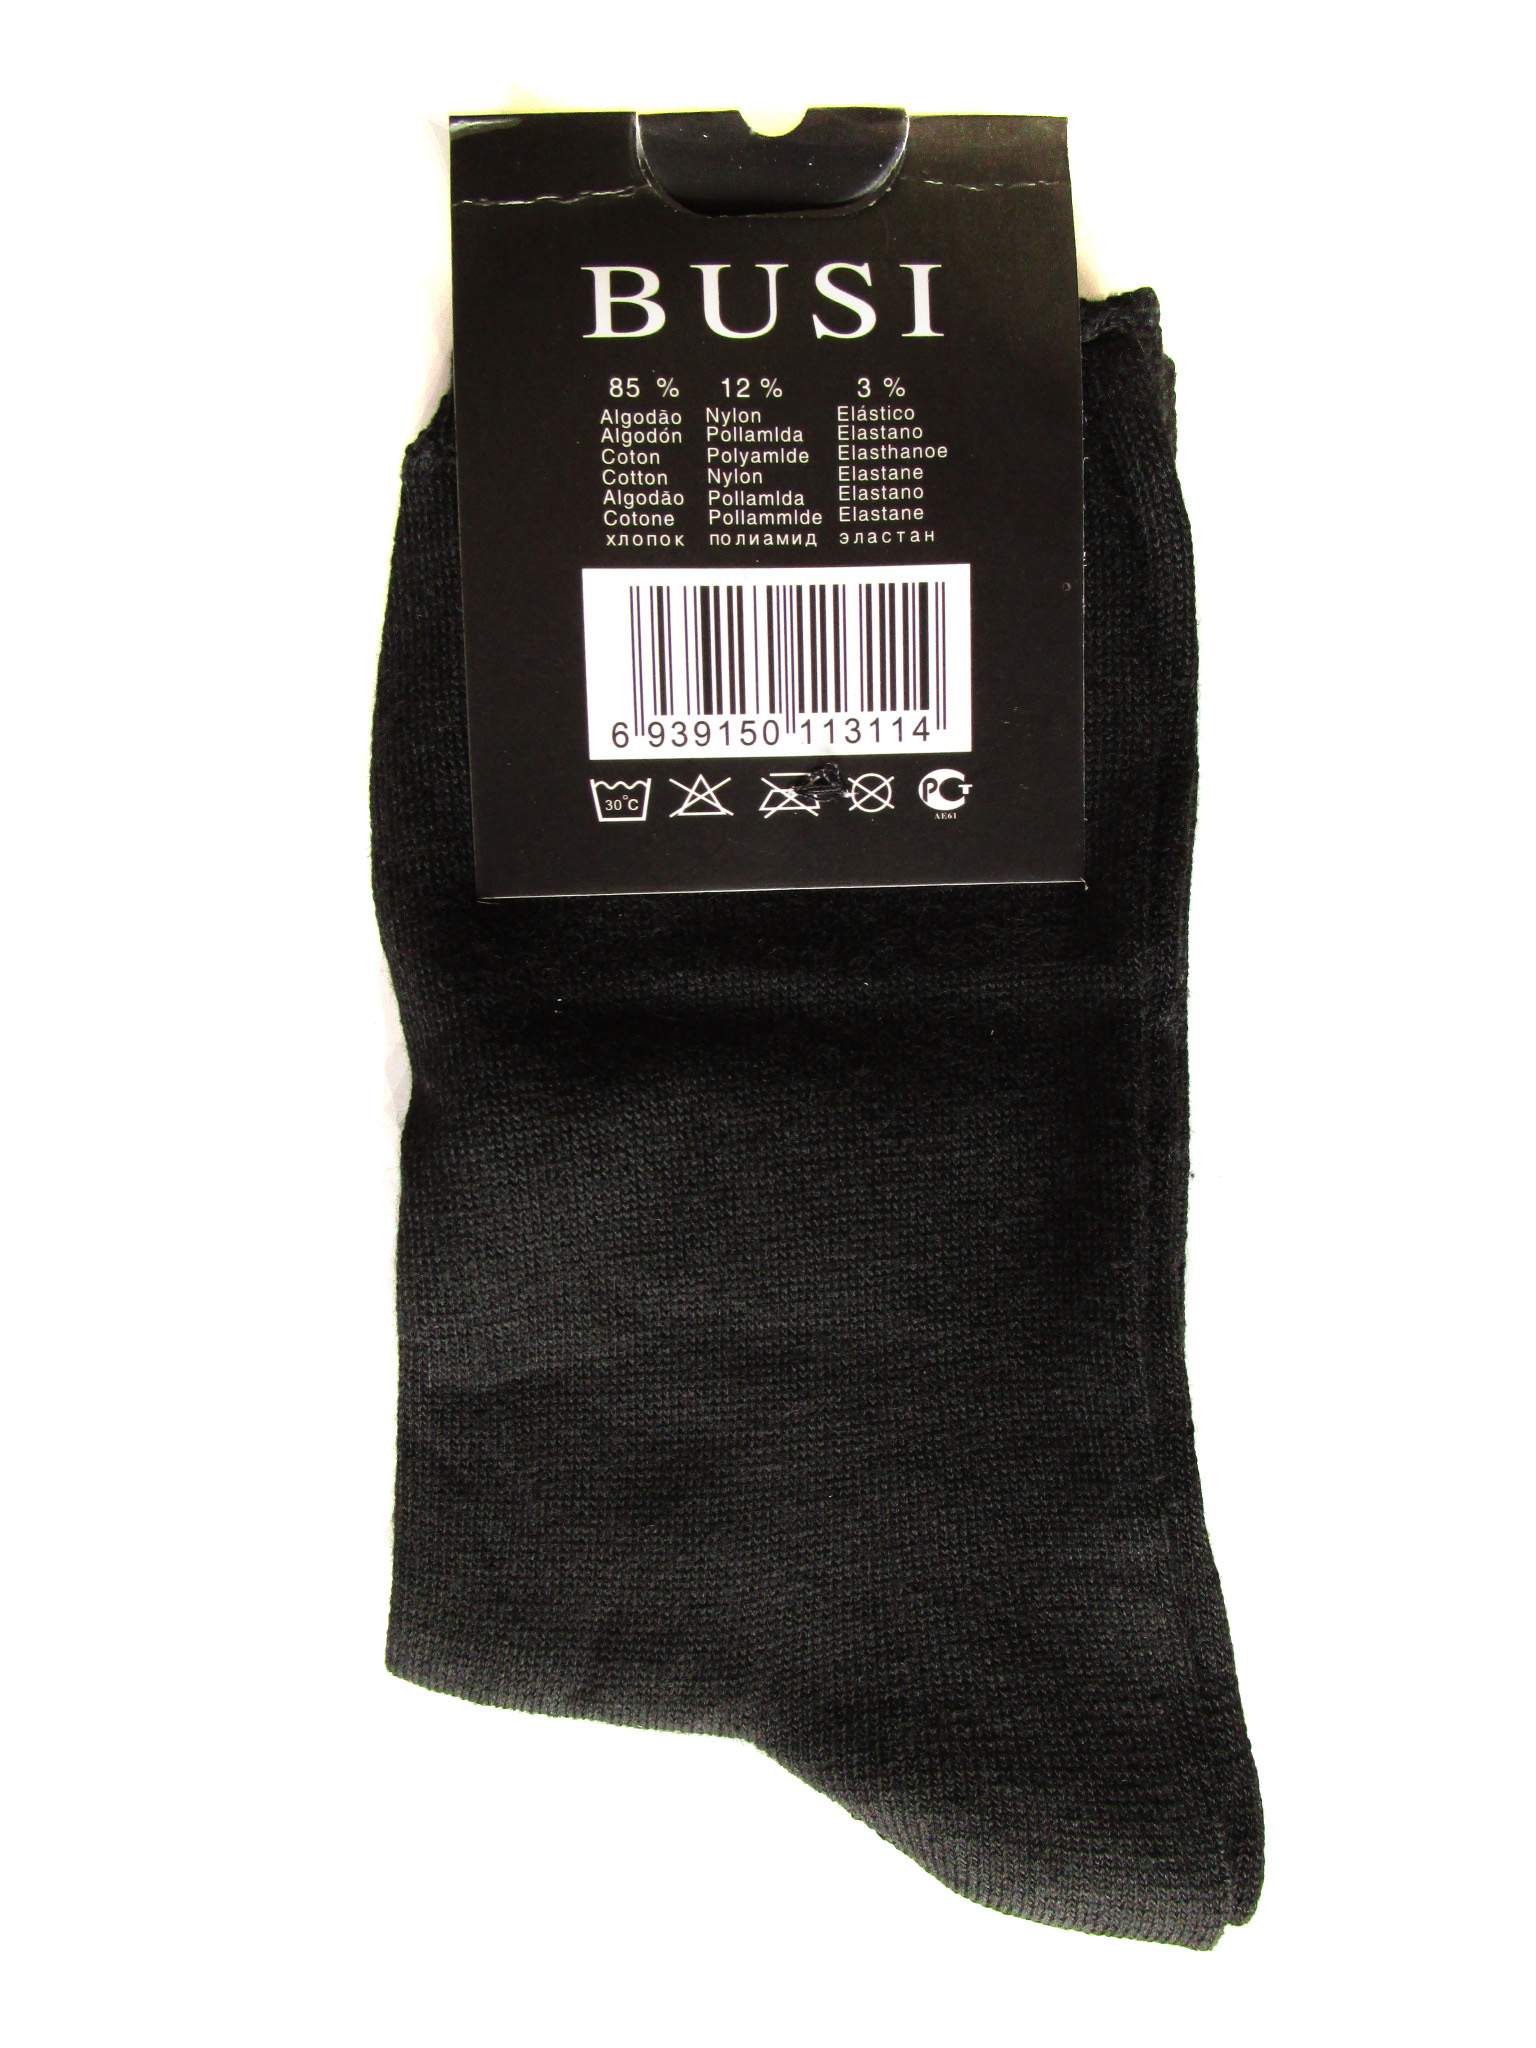 Мужские носки "Busi" (арт.1311)